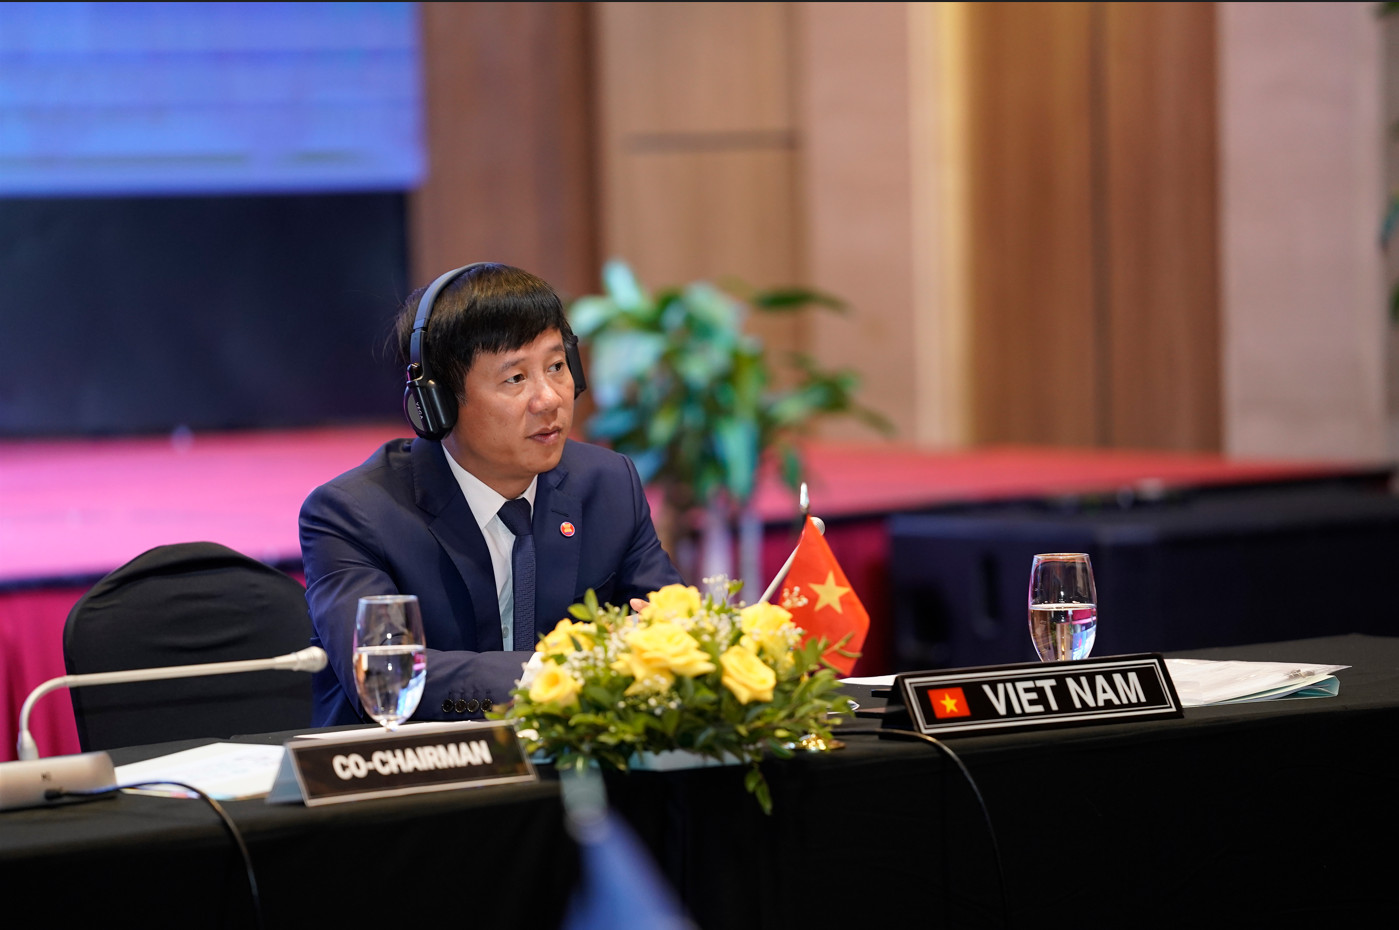 Ông Phạm Đức Luận - Cục trưởng Cục Quản lý đê điều và Phòng chống thiên tai, Chánh Văn phòng Ban Chỉ đạo Quốc gia về phòng, chống thiên tai đồng chủ trì cuộc họp Ủy ban ASEAN về Quản lý thiên tai (ACDM) + Trung Quốc thường niên lần thứ 5, ngày 15/6 tại Đà Nẵng. Ảnh: NH.